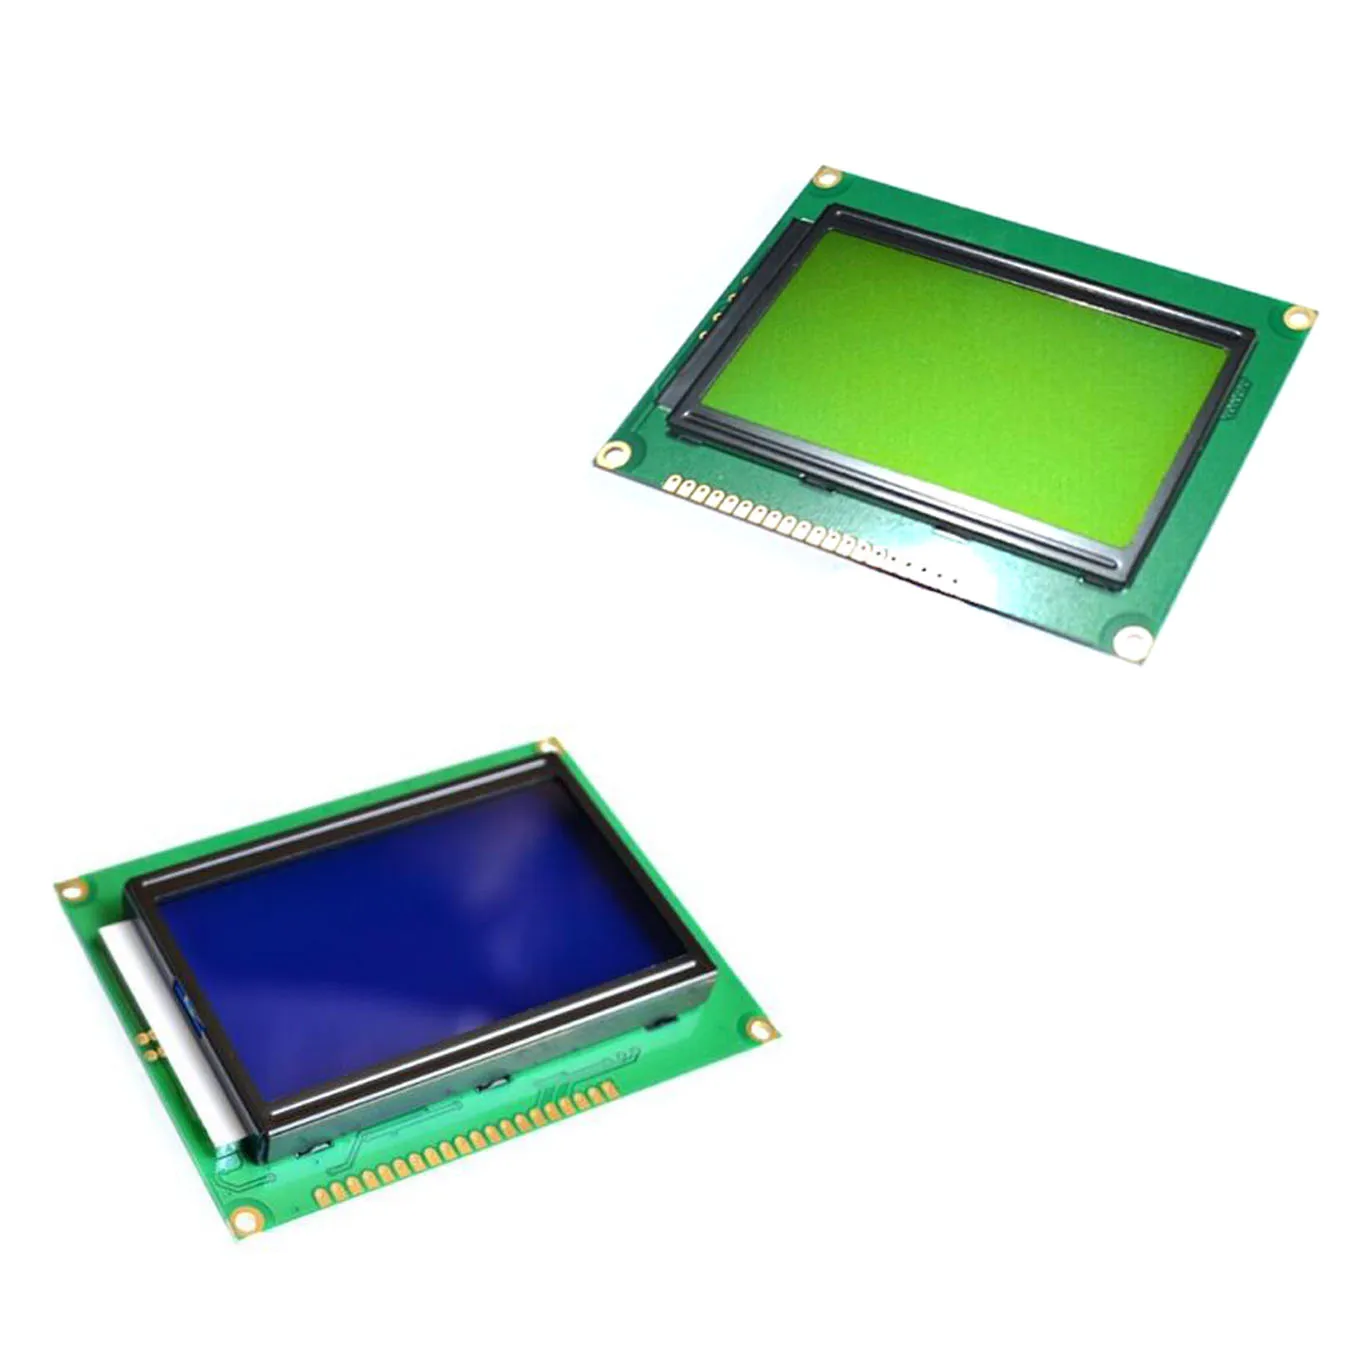 ЖК-дисплей доска желто-зеленый экран 12864 128X64 5 V Синий Экран дисплей ST7920 ЖК-дисплей модуль для arduino 100% Новый оригинальный